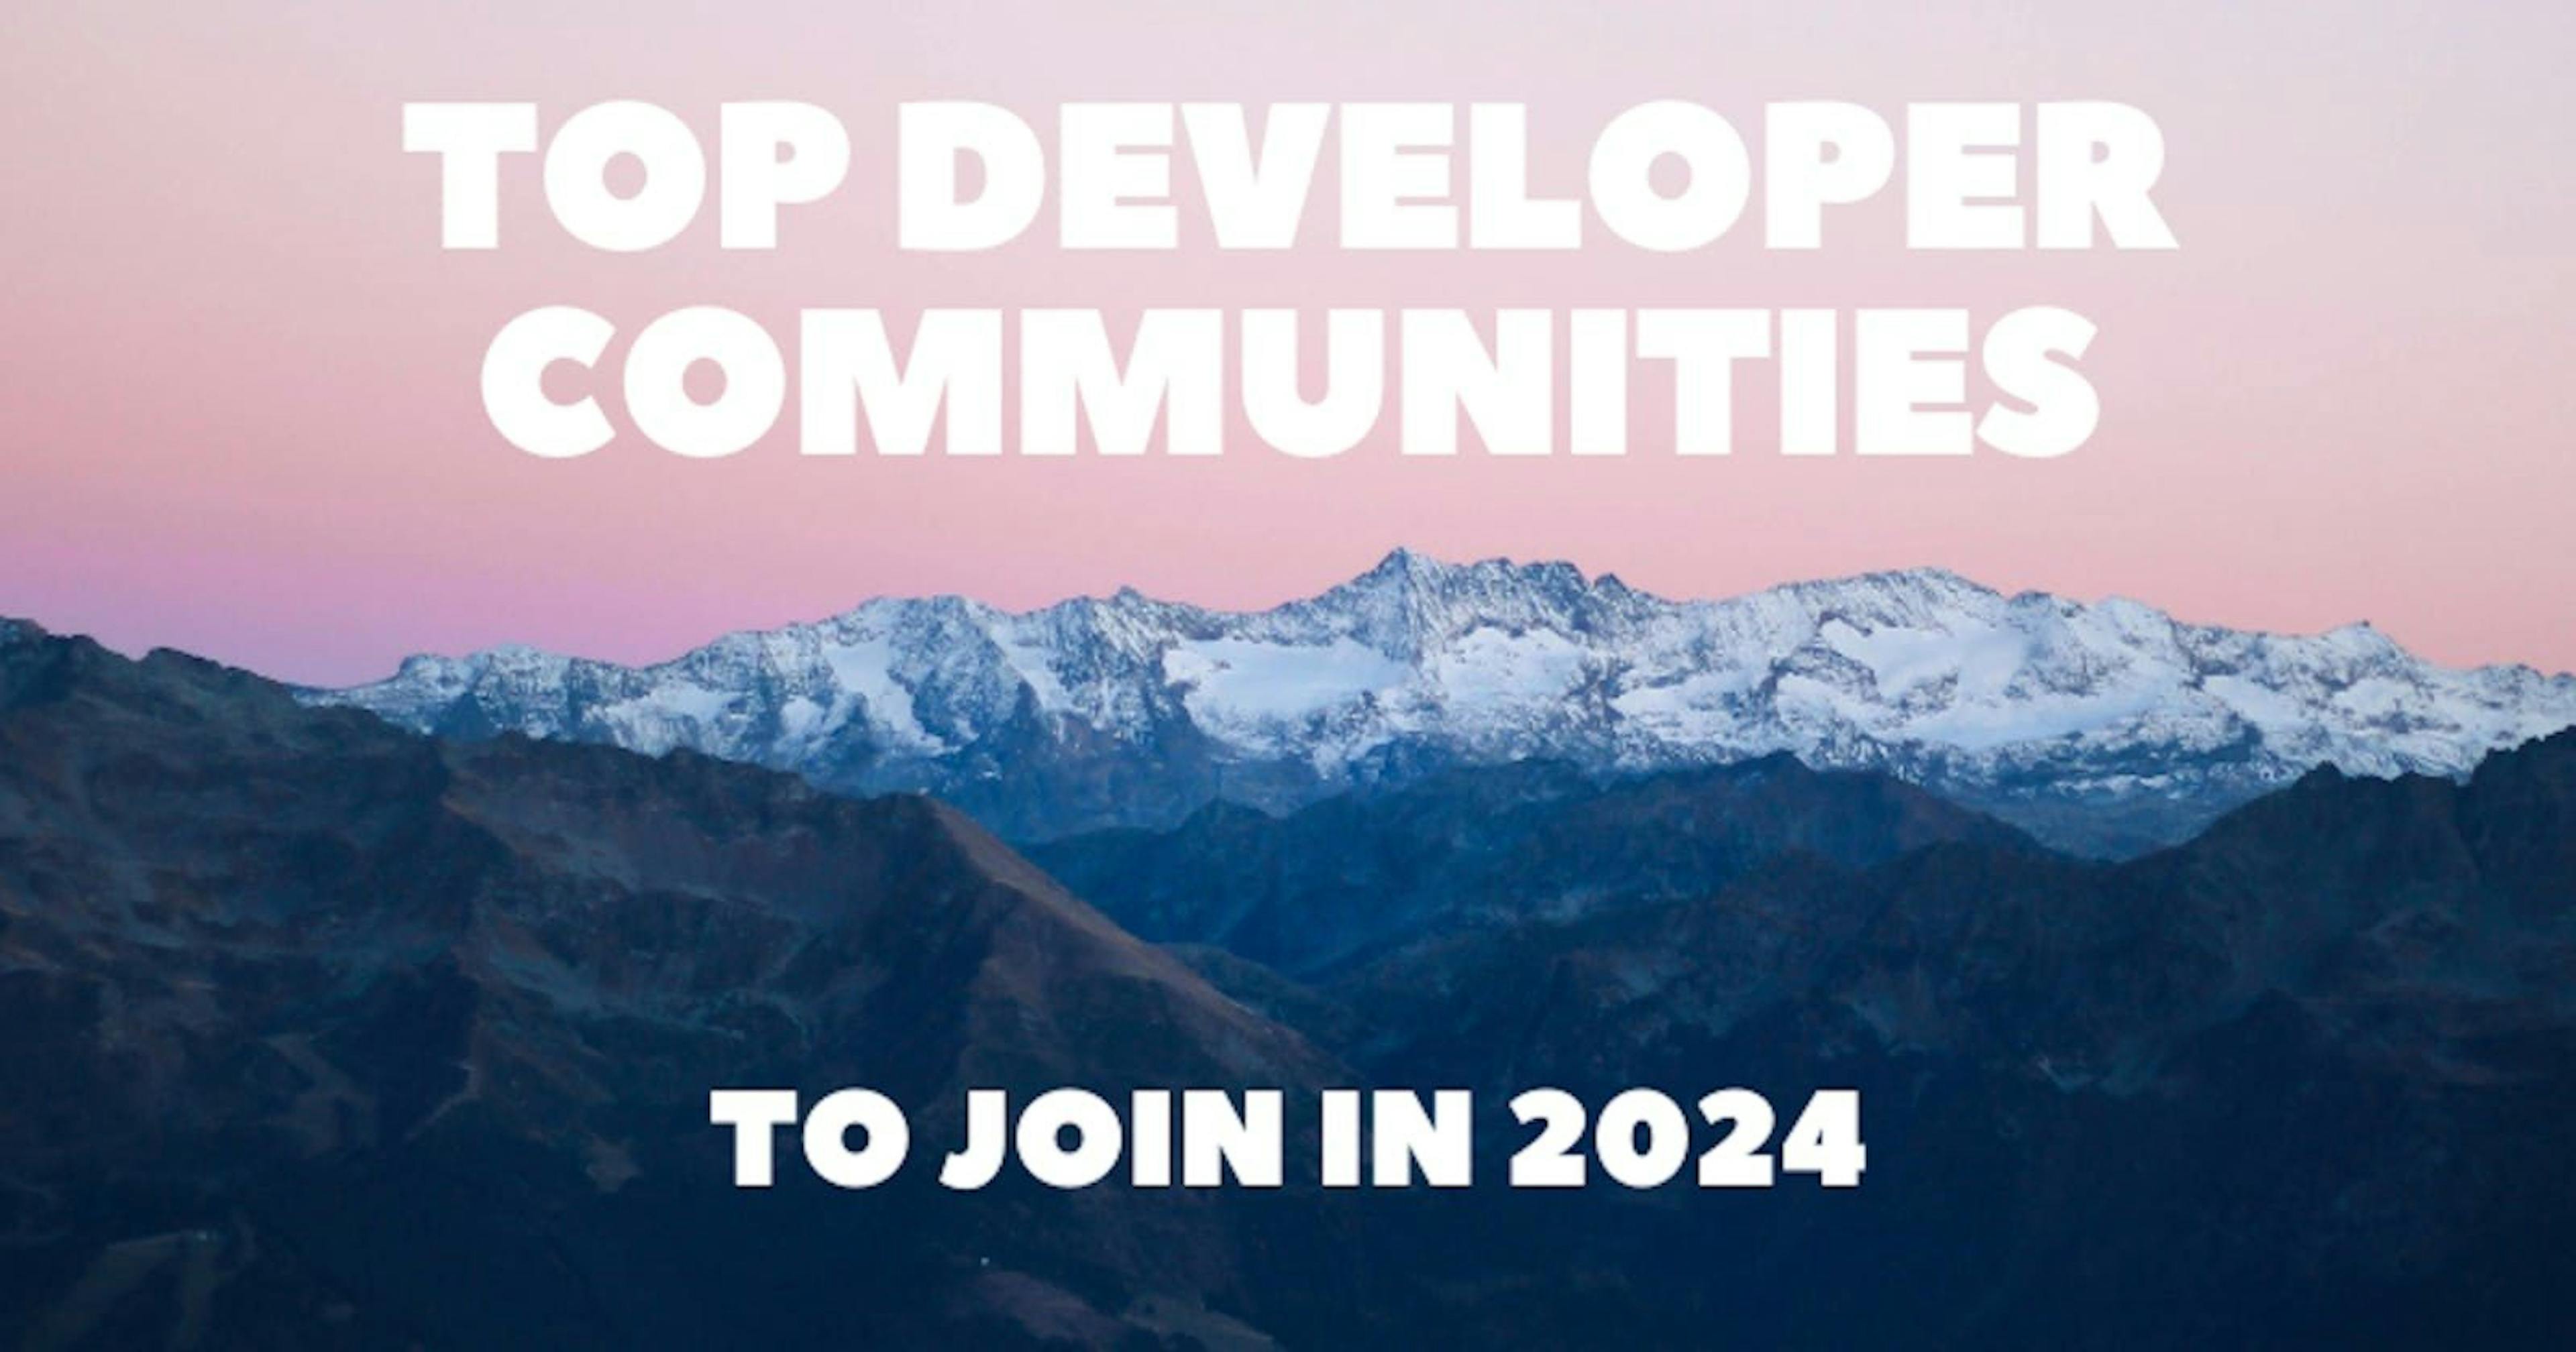 featured image - Tìm nhóm của bạn vào năm 2024 với 16 cộng đồng nhà phát triển này 🧑‍💻👩‍💻